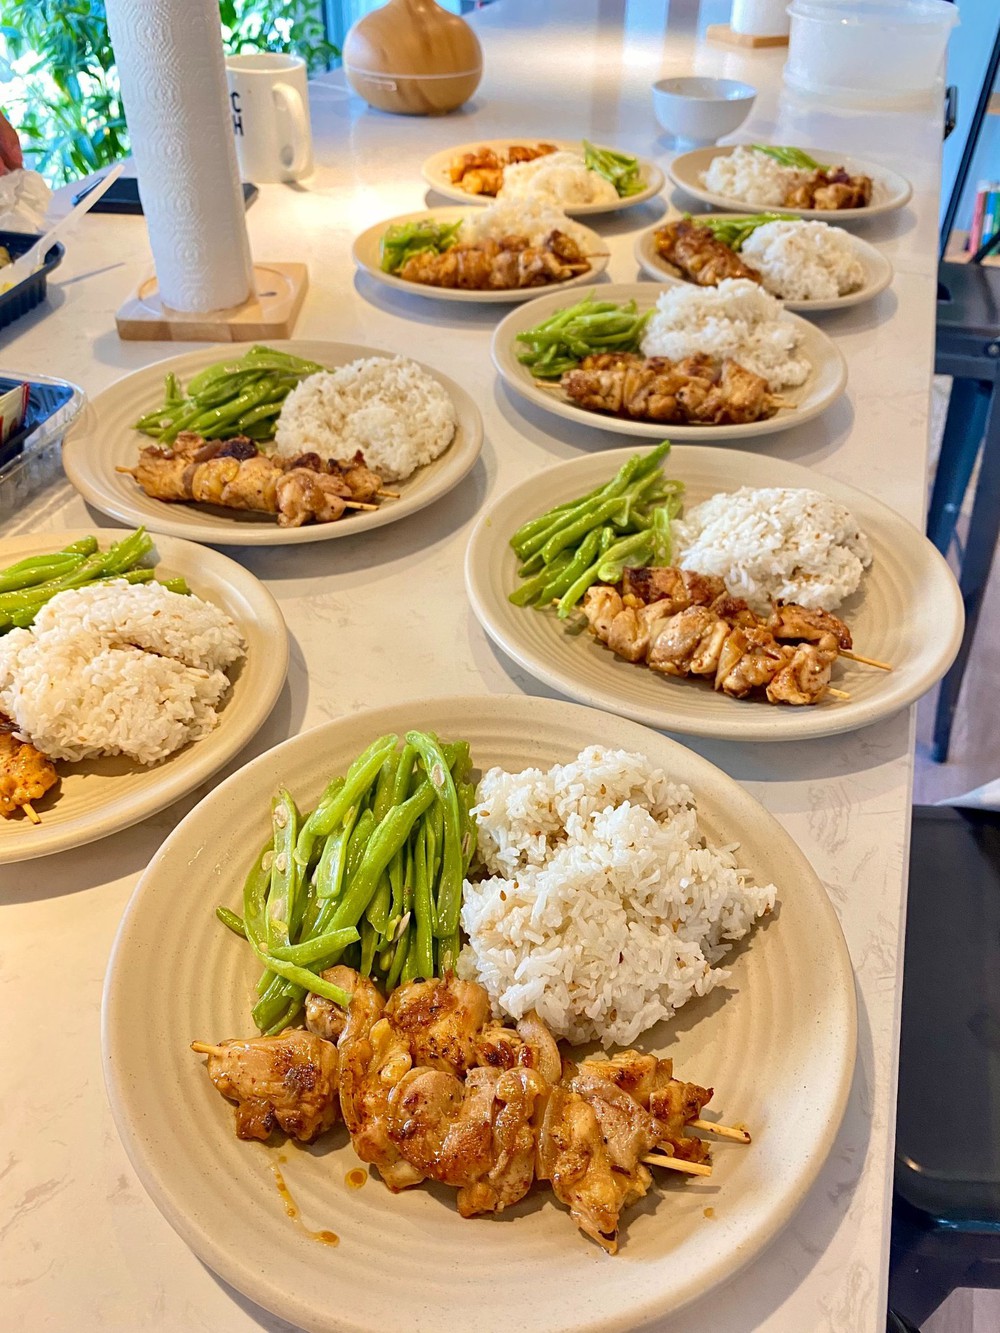 Trai đẹp Hà Nội mở bếp, tự tay nấu những bữa trưa hấp dẫn mời đồng nghiệp khiến ai nấy trầm trồ - Ảnh 7.